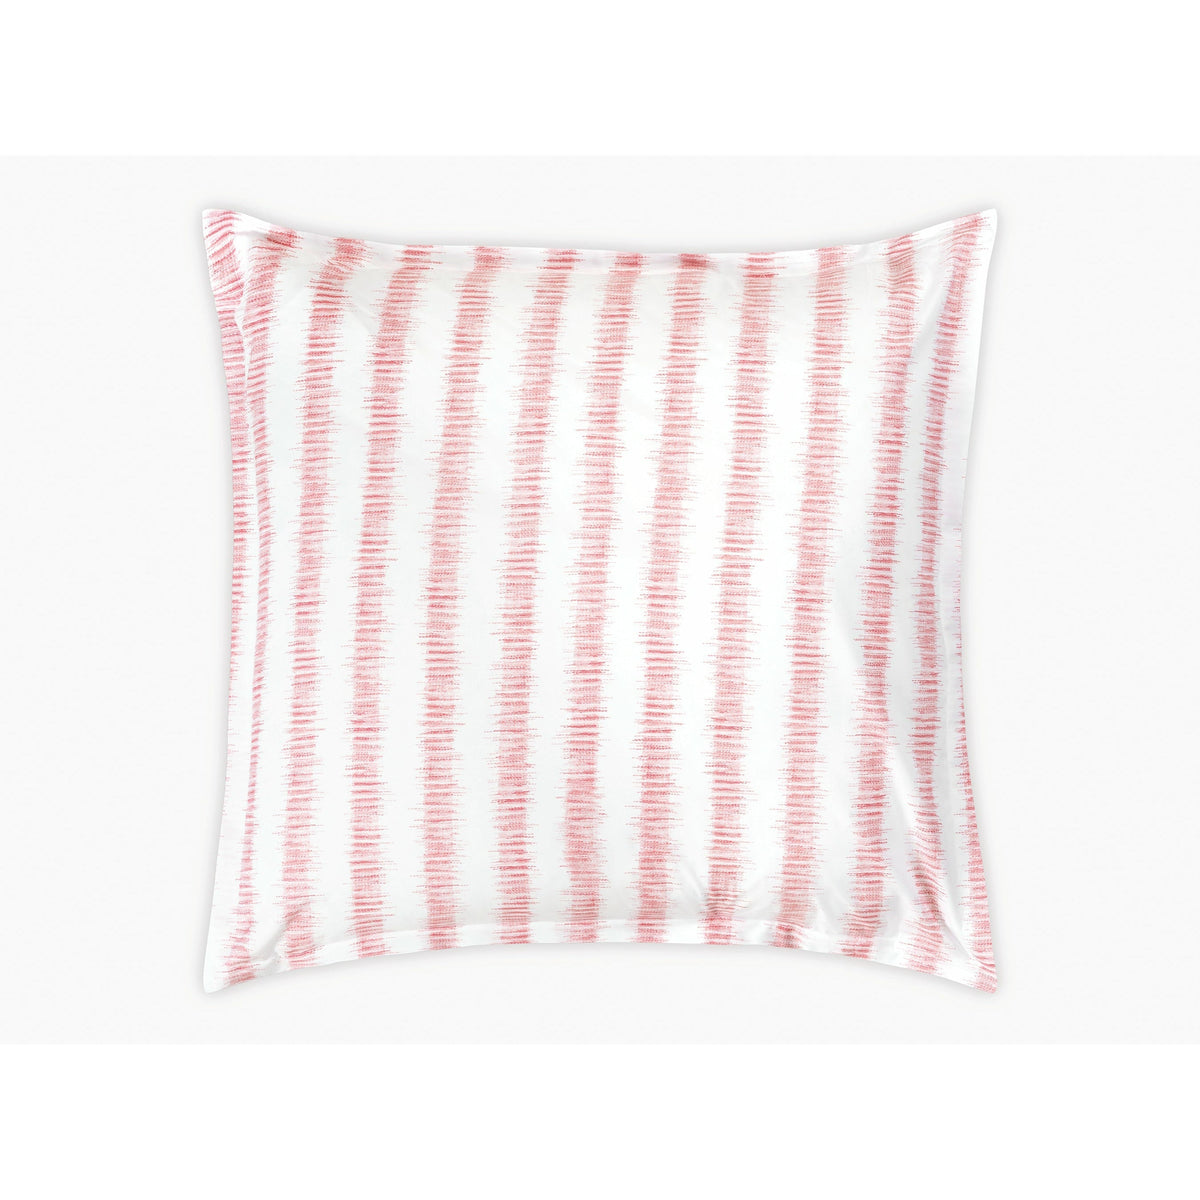 Matouk Schumacher Attleboro Bedding Euro Sham Pink Coral Fine Linens